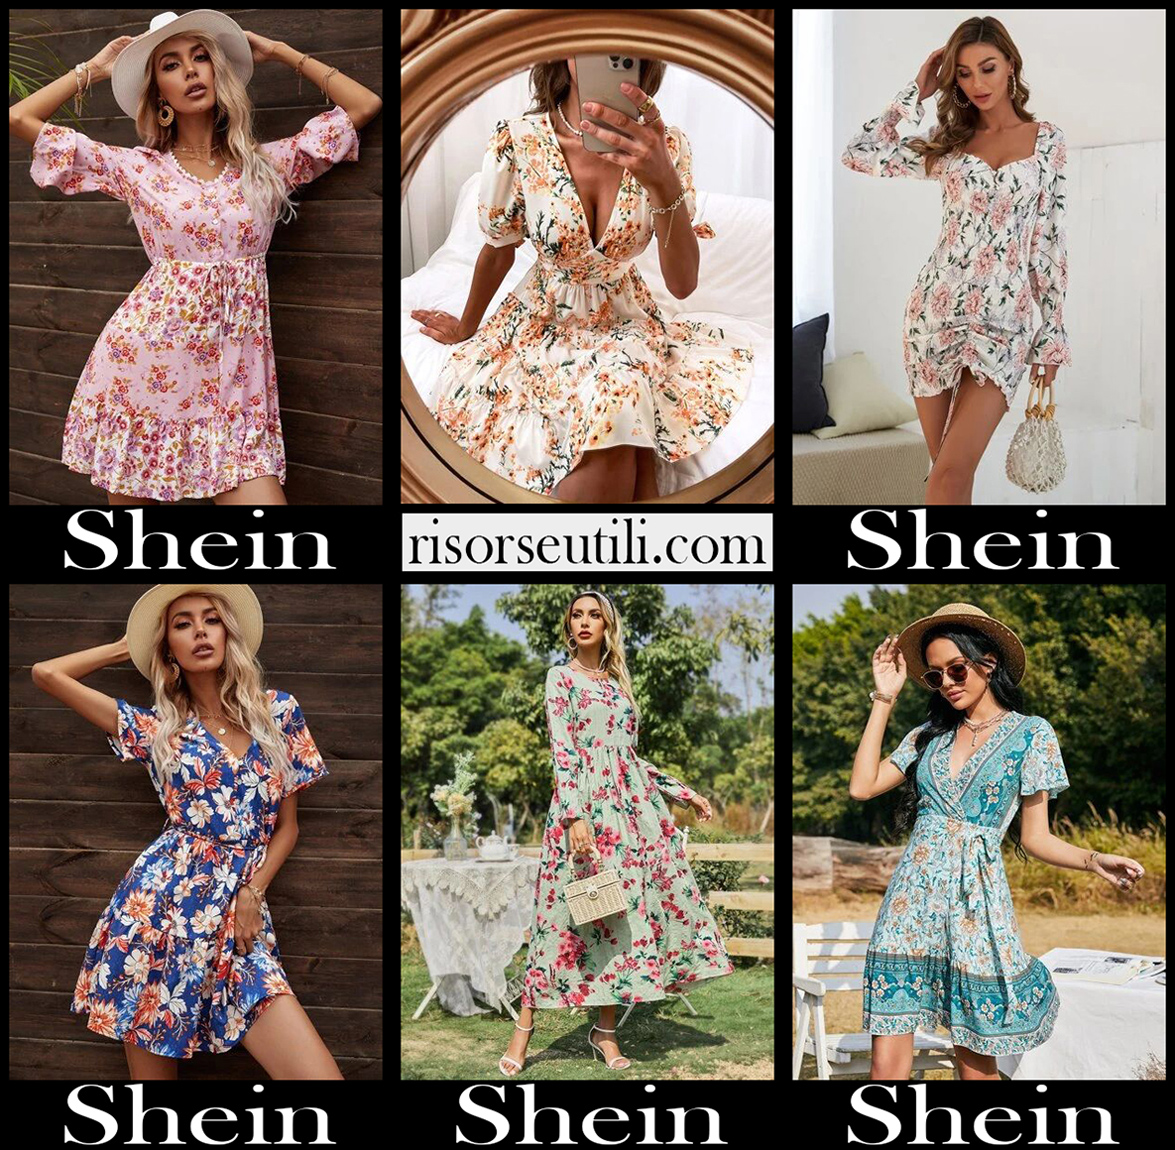 shein women's clothing